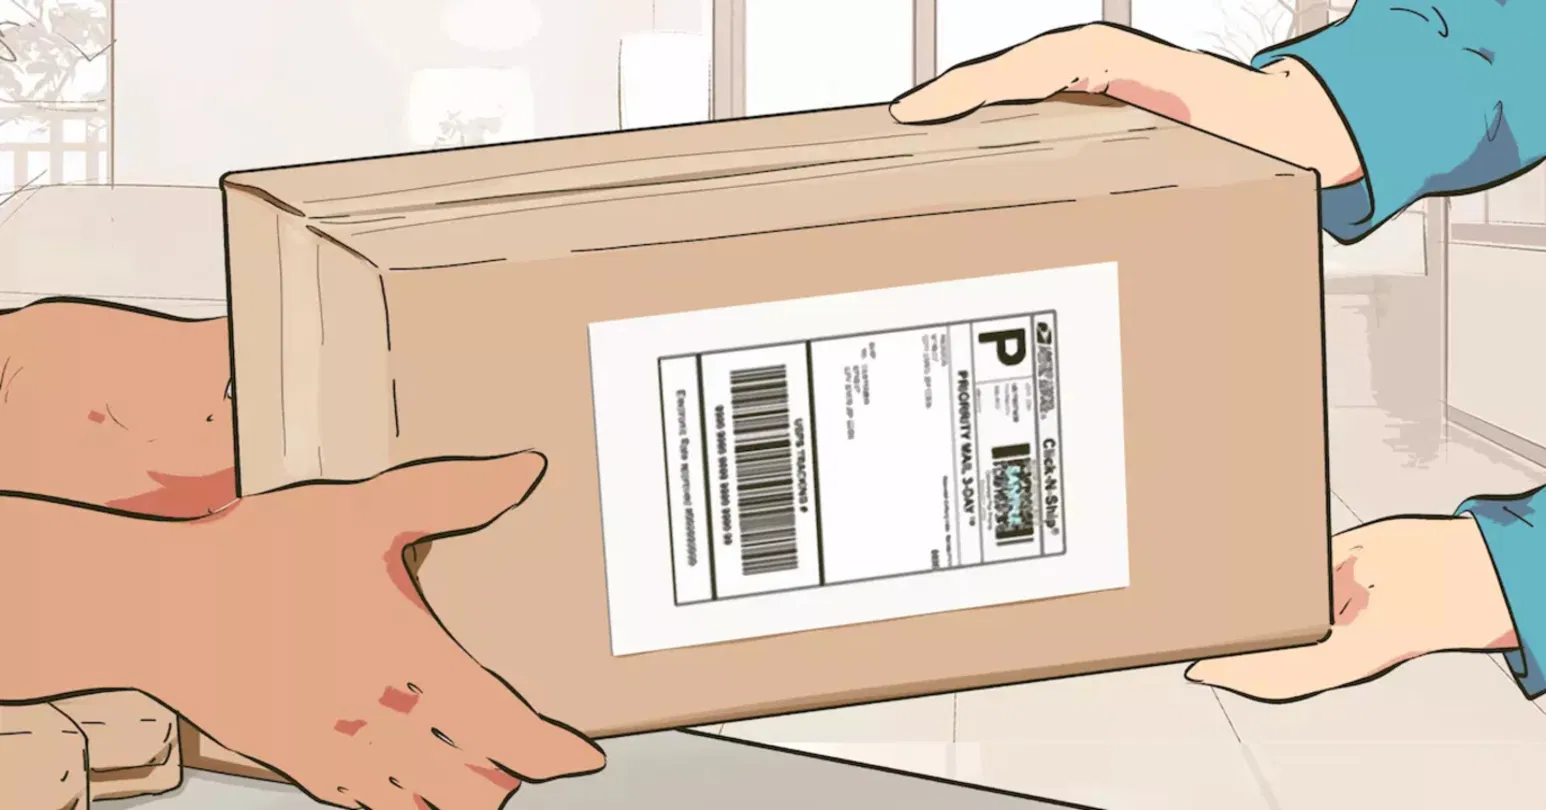 Dibujo de la devolución de un paquete de Amazon